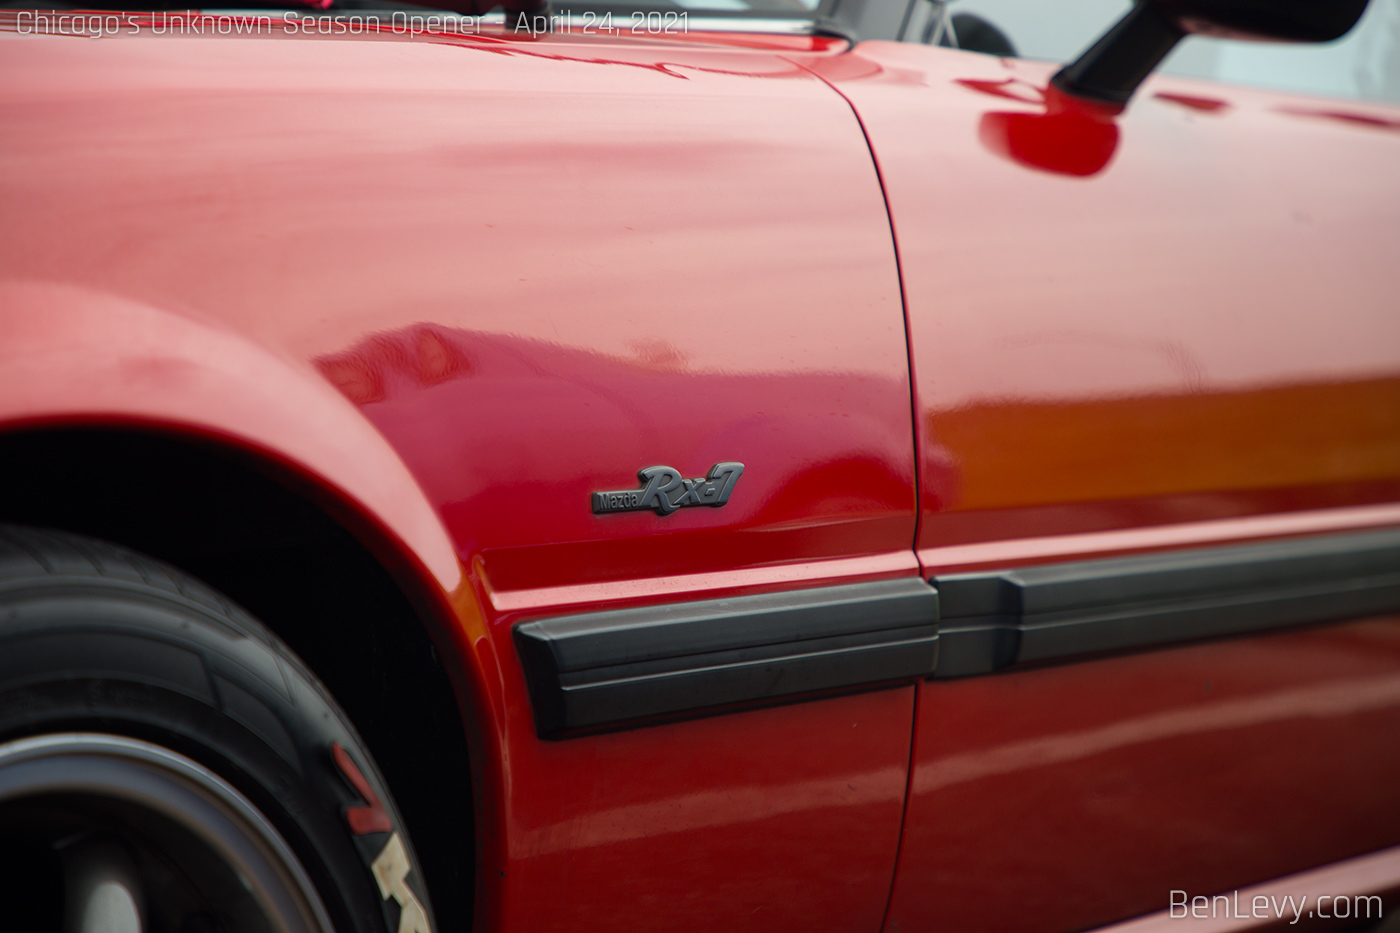 Detail of Mazda RX-7 Badge on Fender